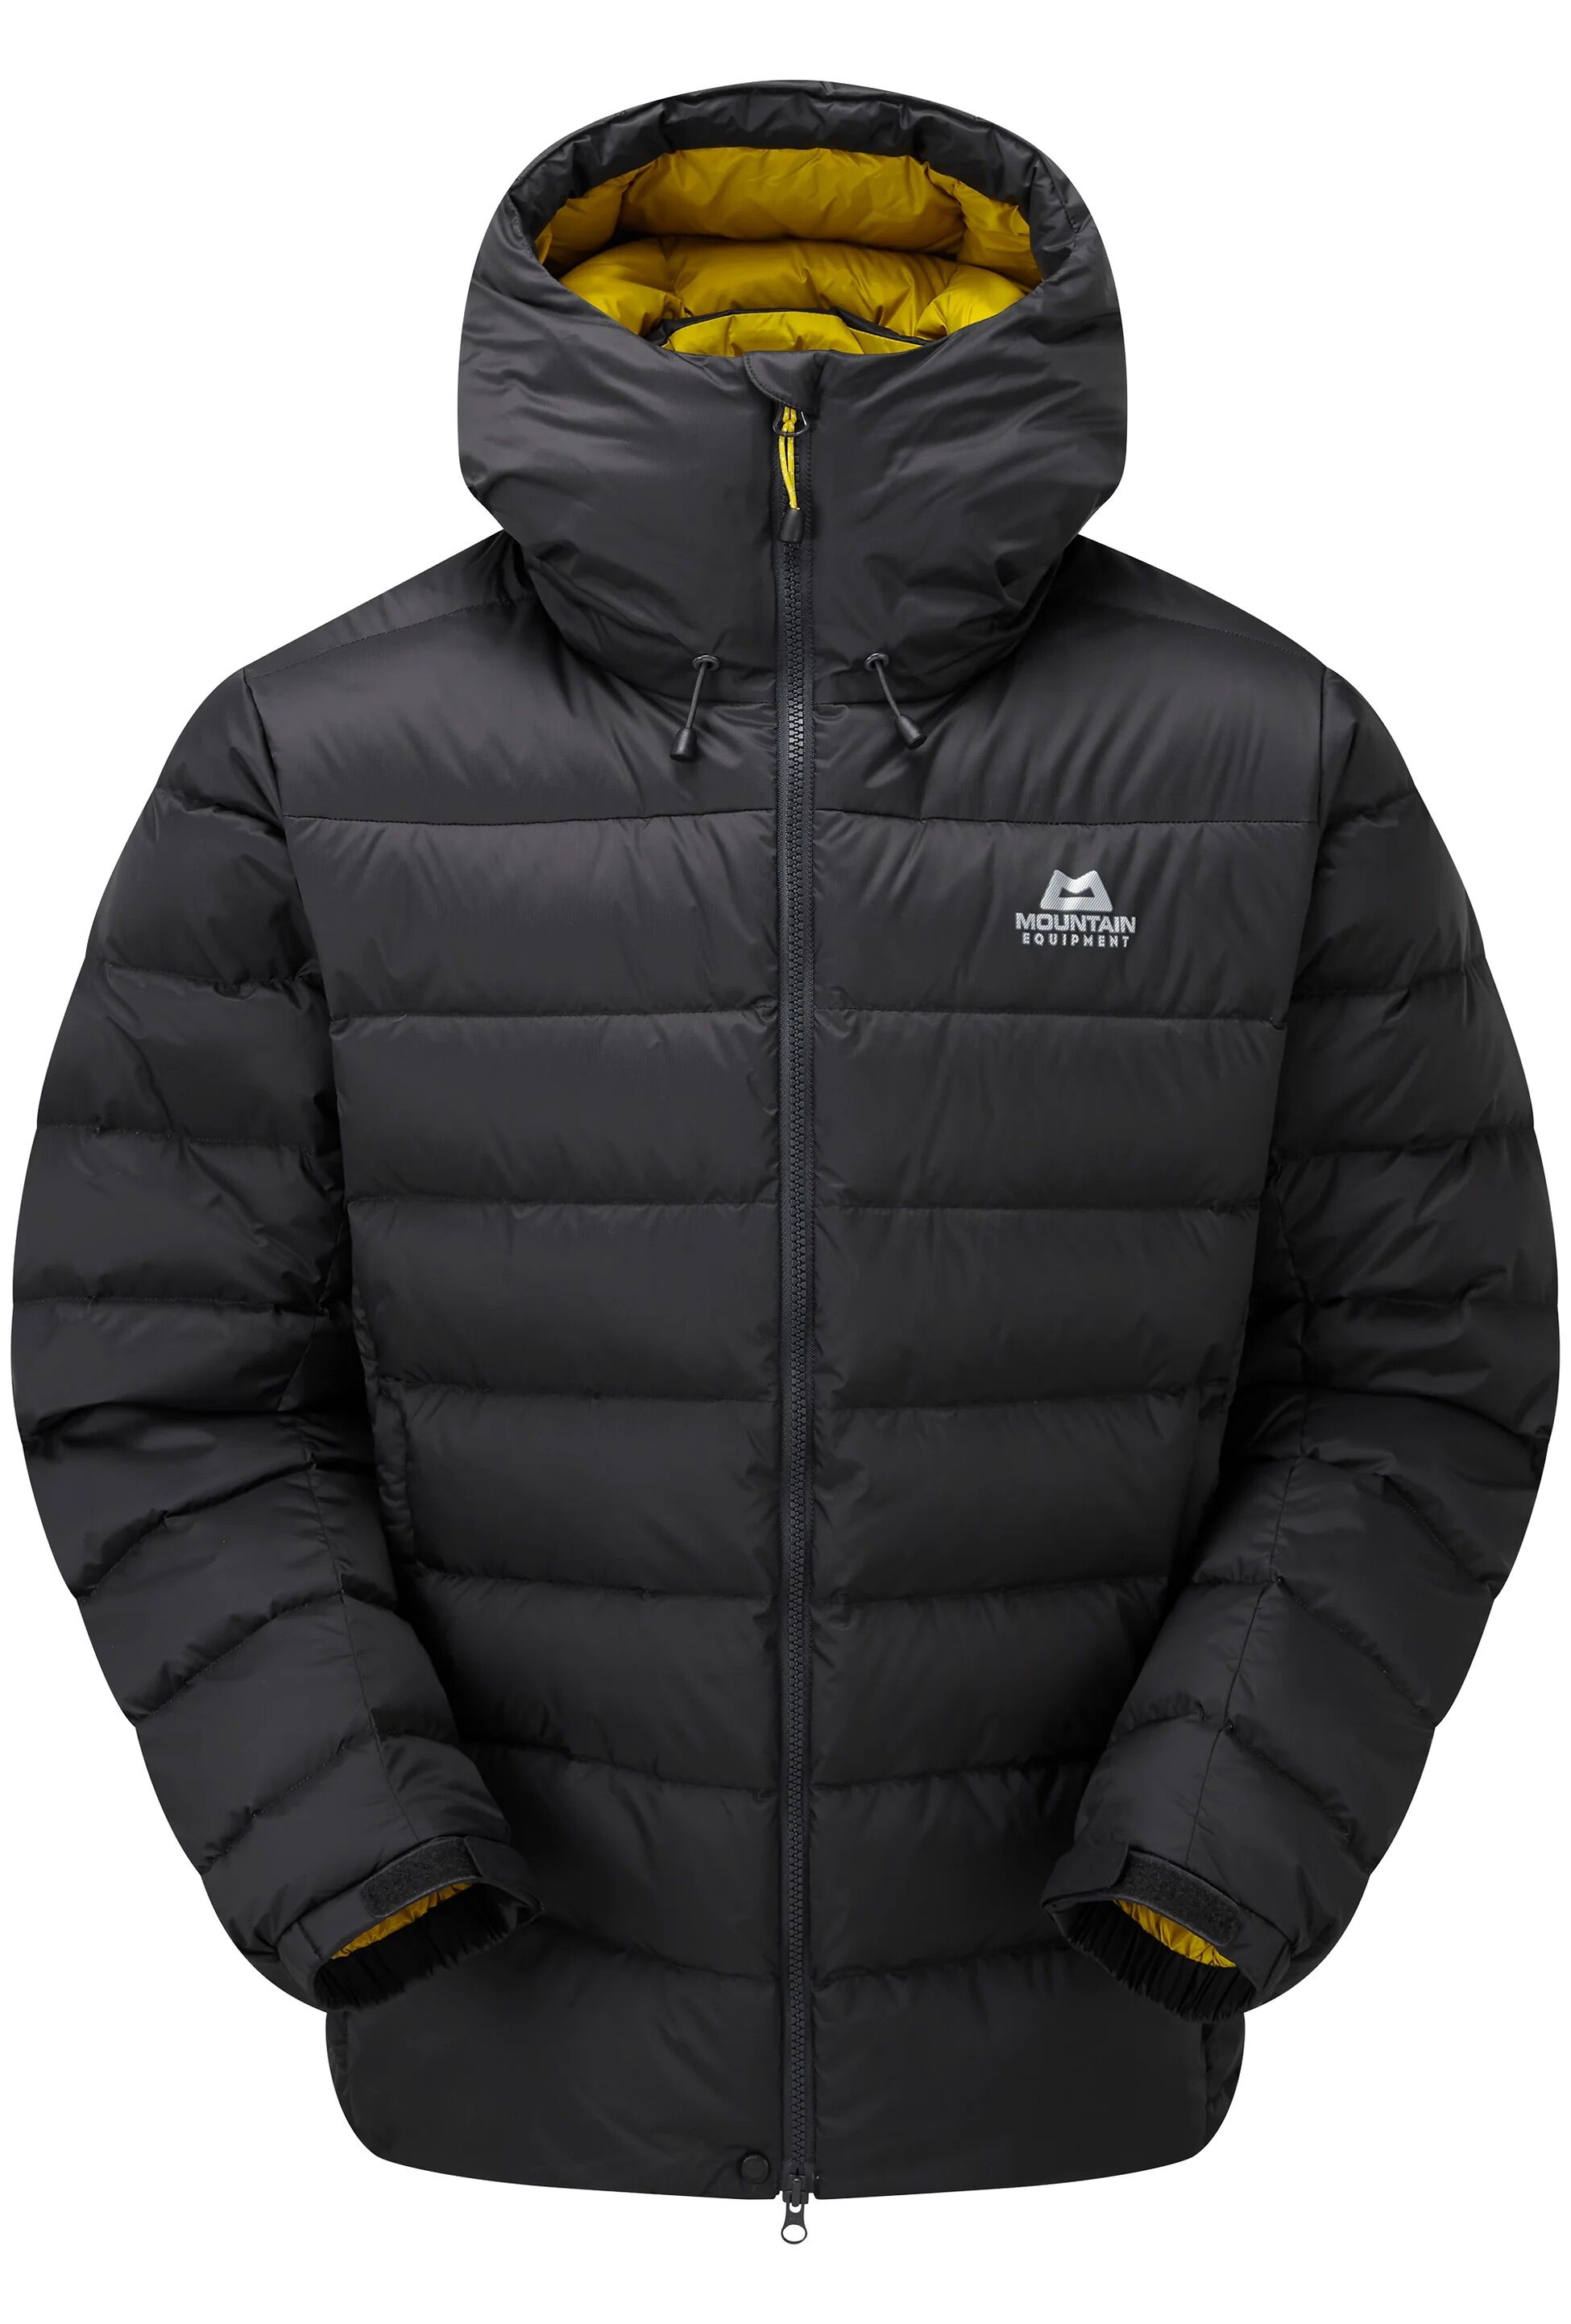 Mountain Equipment Senja Jacket - Down jacket - Men's | Hardloop